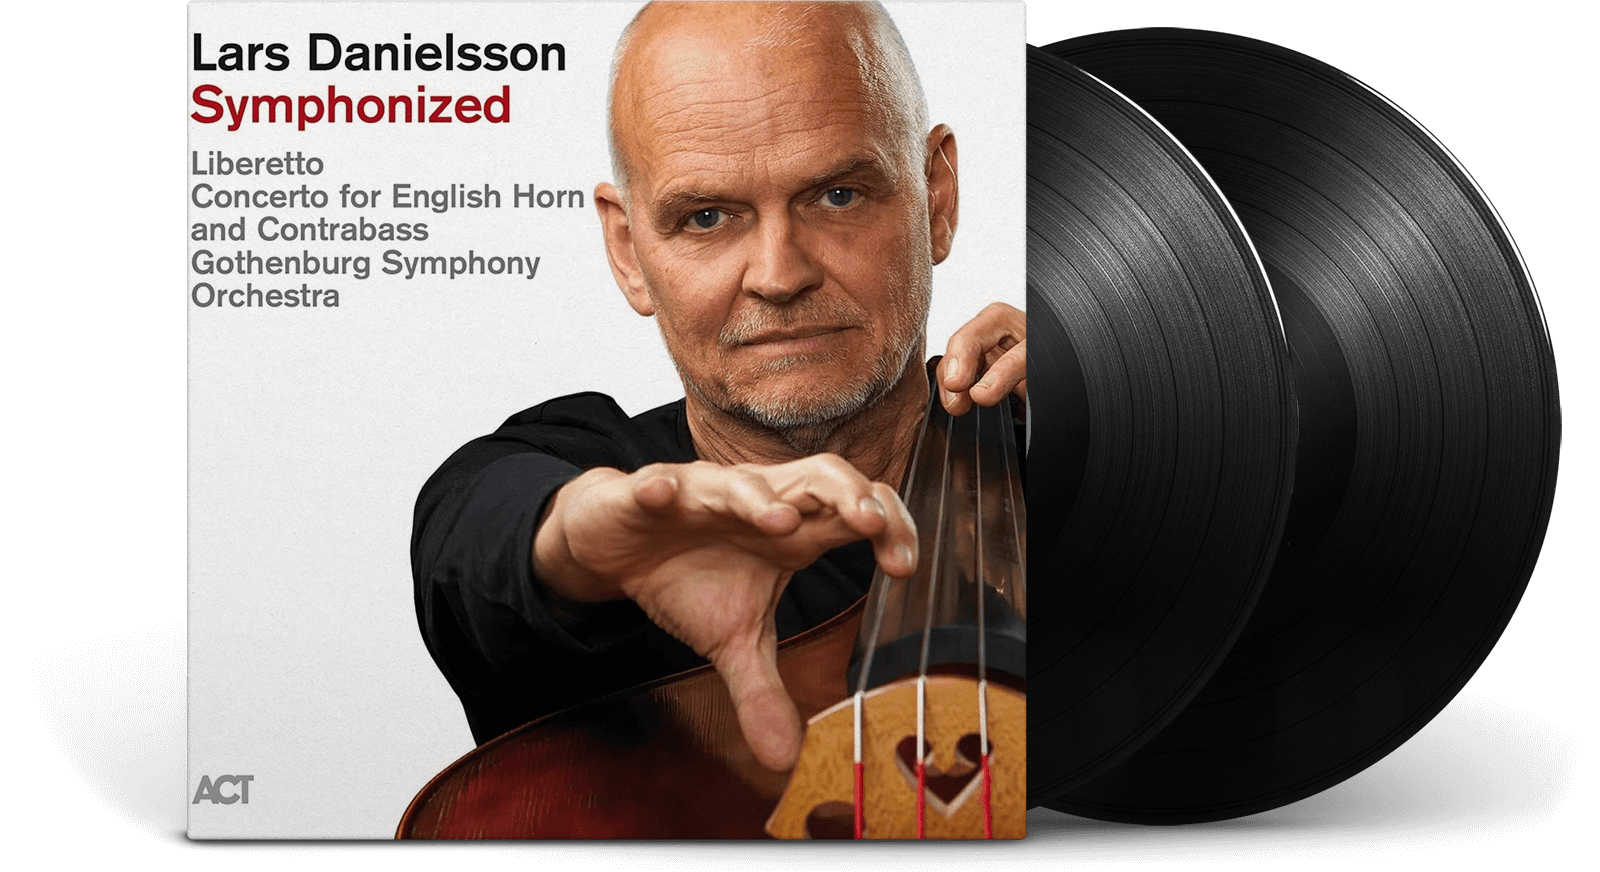 USA profil Betjening mulig Vinyl | Lars Danielsson | Symphonized - The Record Hub